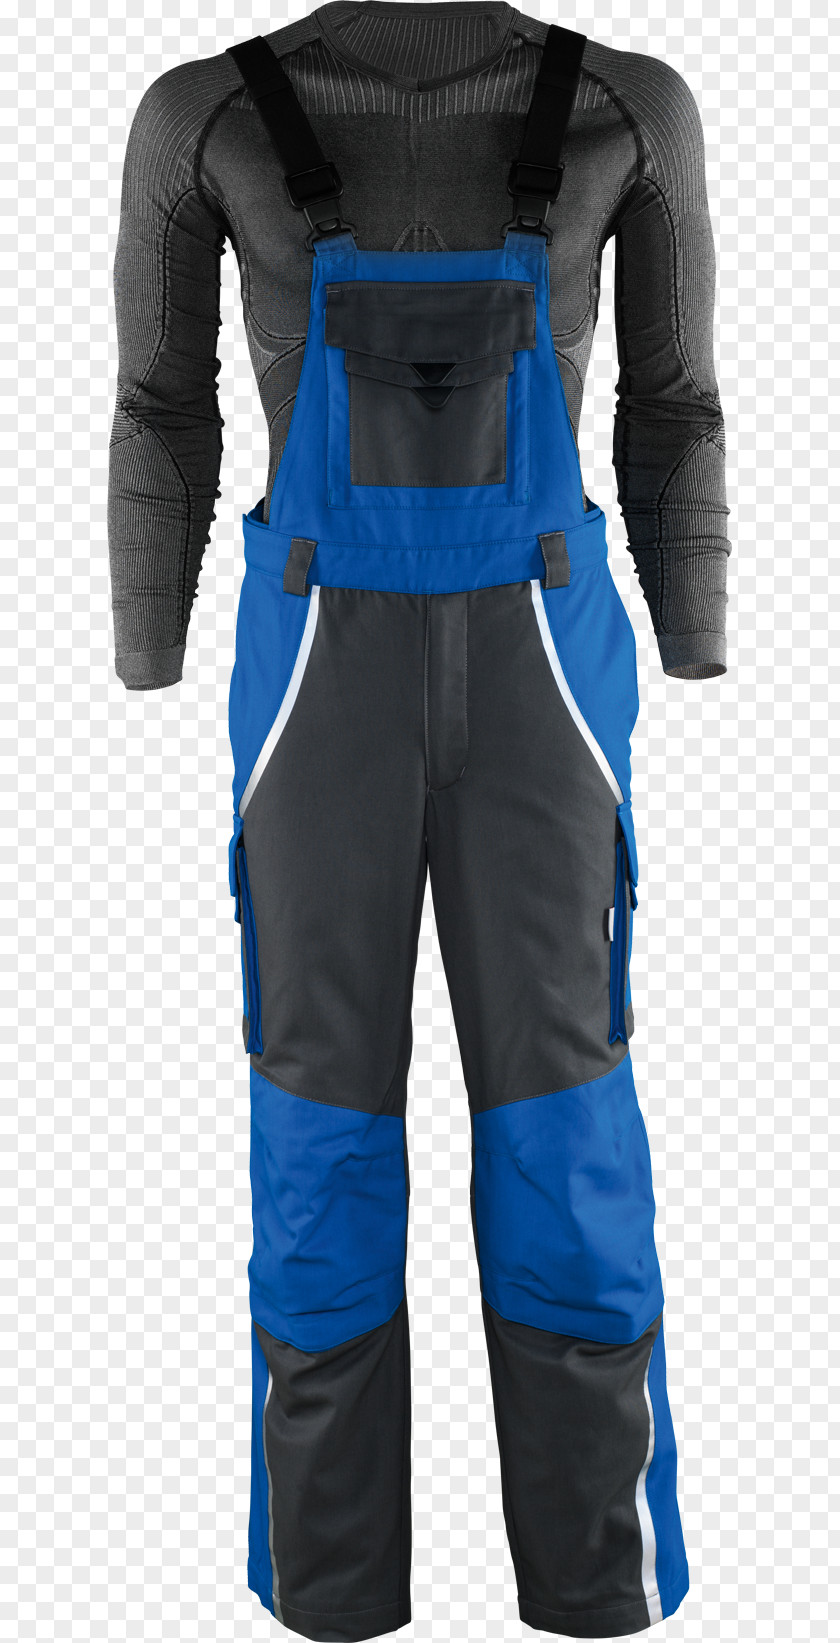 Flash Material Adobe Player Jacket Clothing Hockey Protective Pants & Ski Shorts PNG